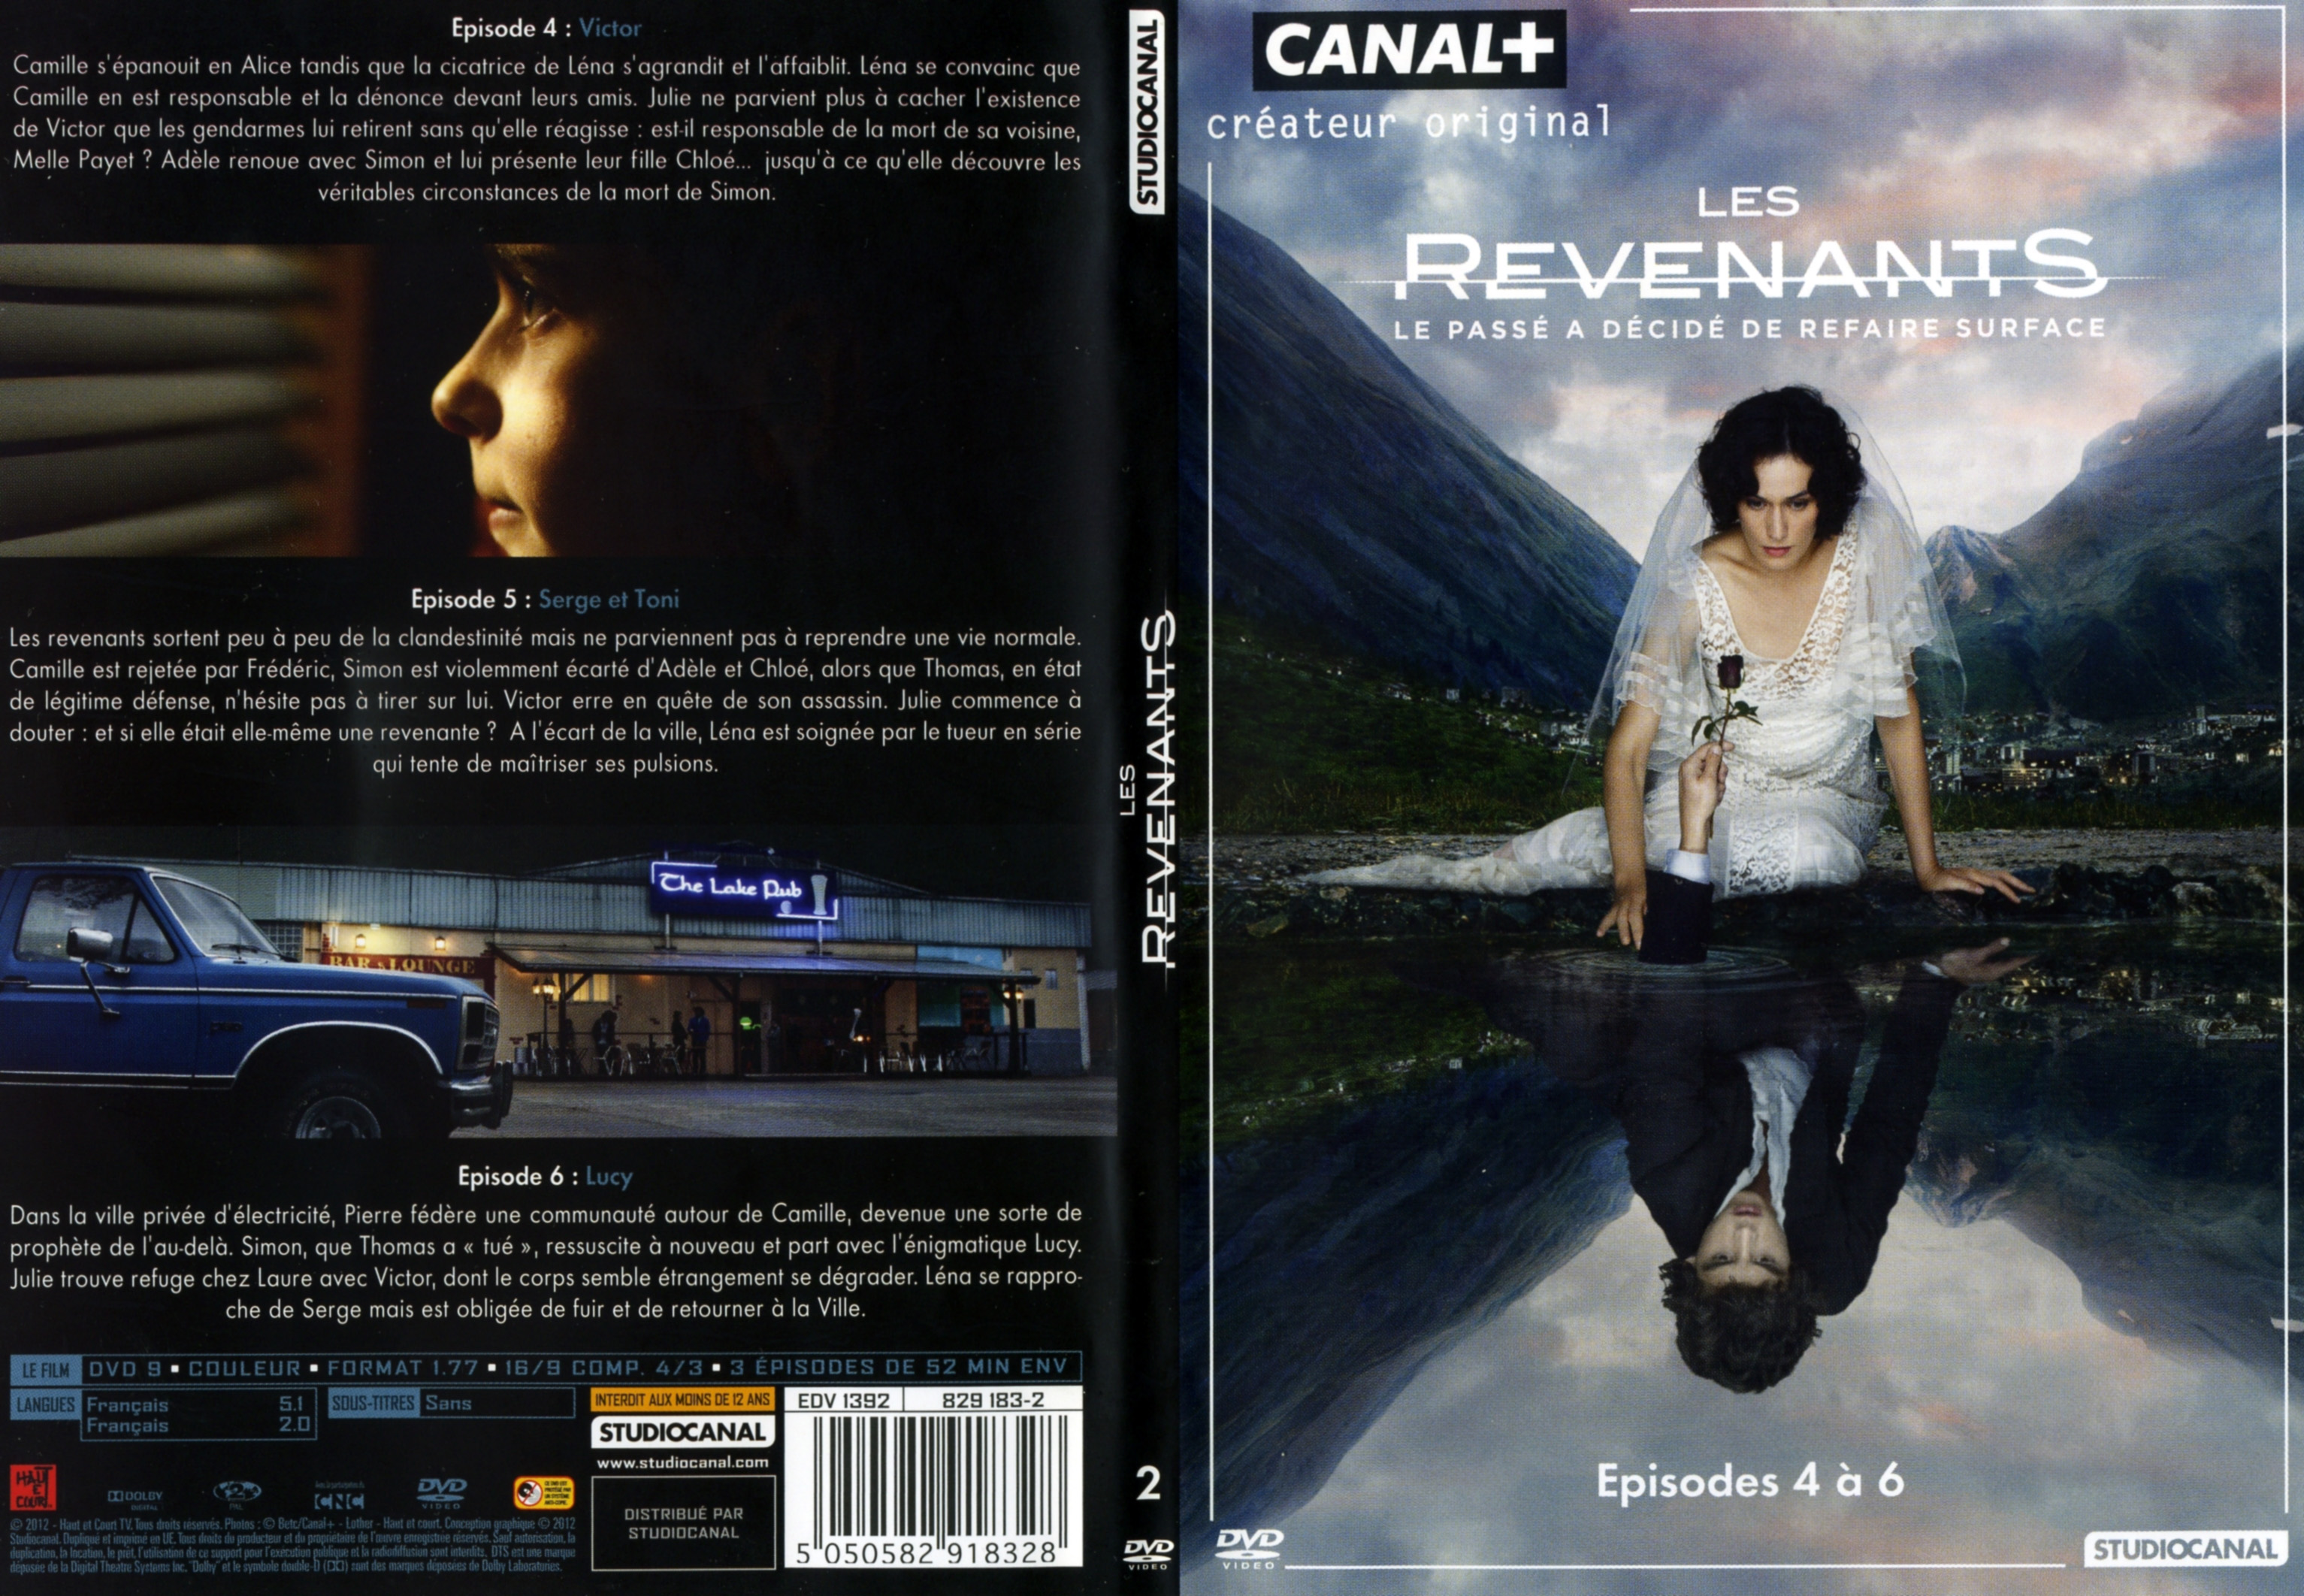 Jaquette DVD Les revenants DVD 2